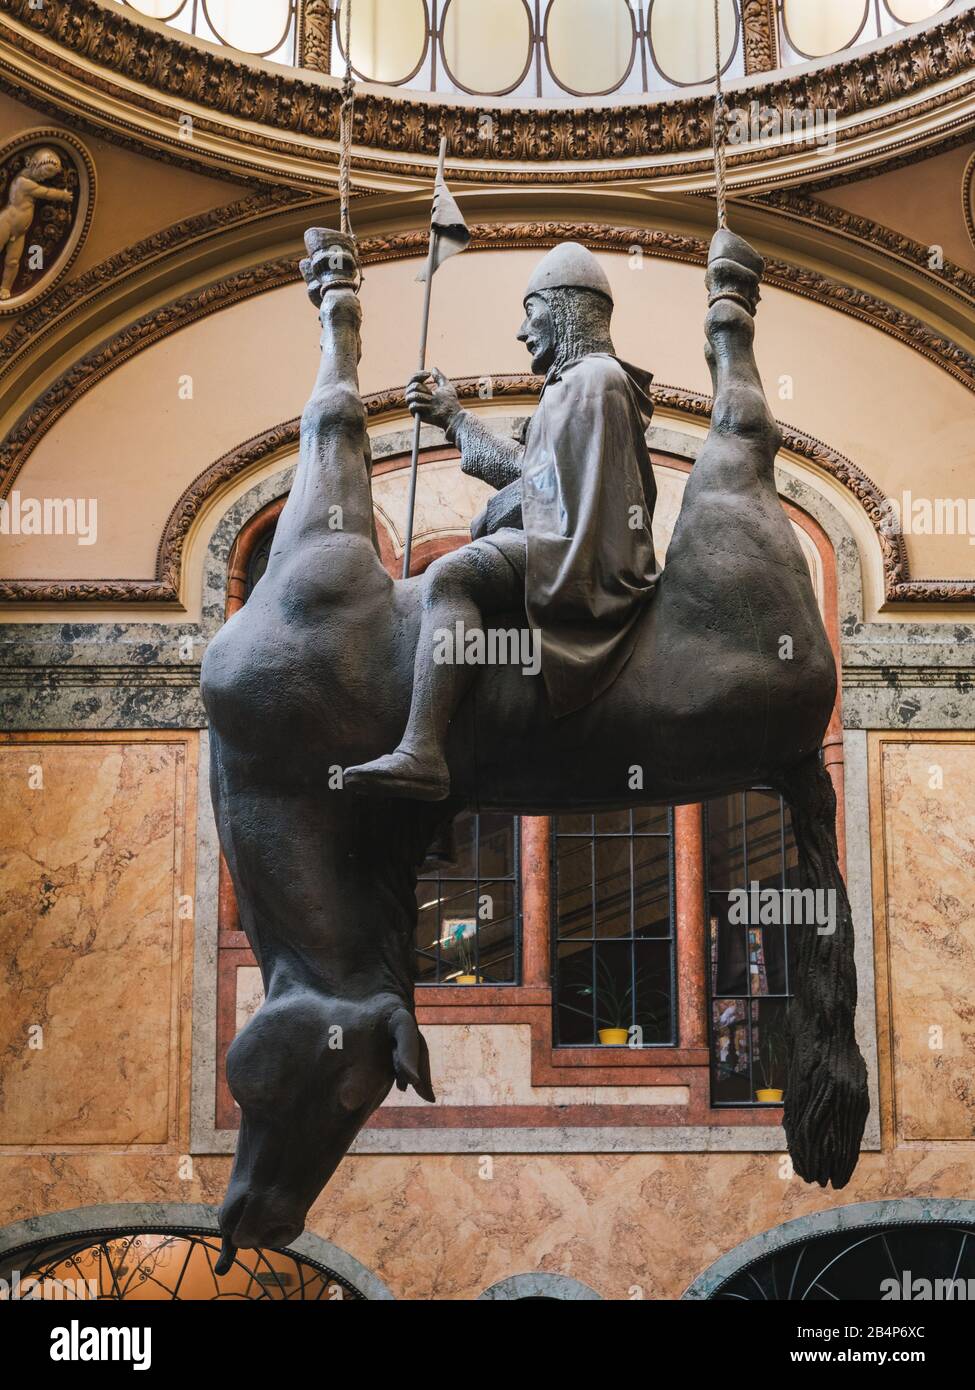 Prag, Tschechien - 10. Juni 2019: König Wenzels-Reiten auf einer Toten-Pferd-Statue in Lucerna Passage von David Cerny im Jahr 1999. Ein Ironisches und Spötendes T Stockfoto